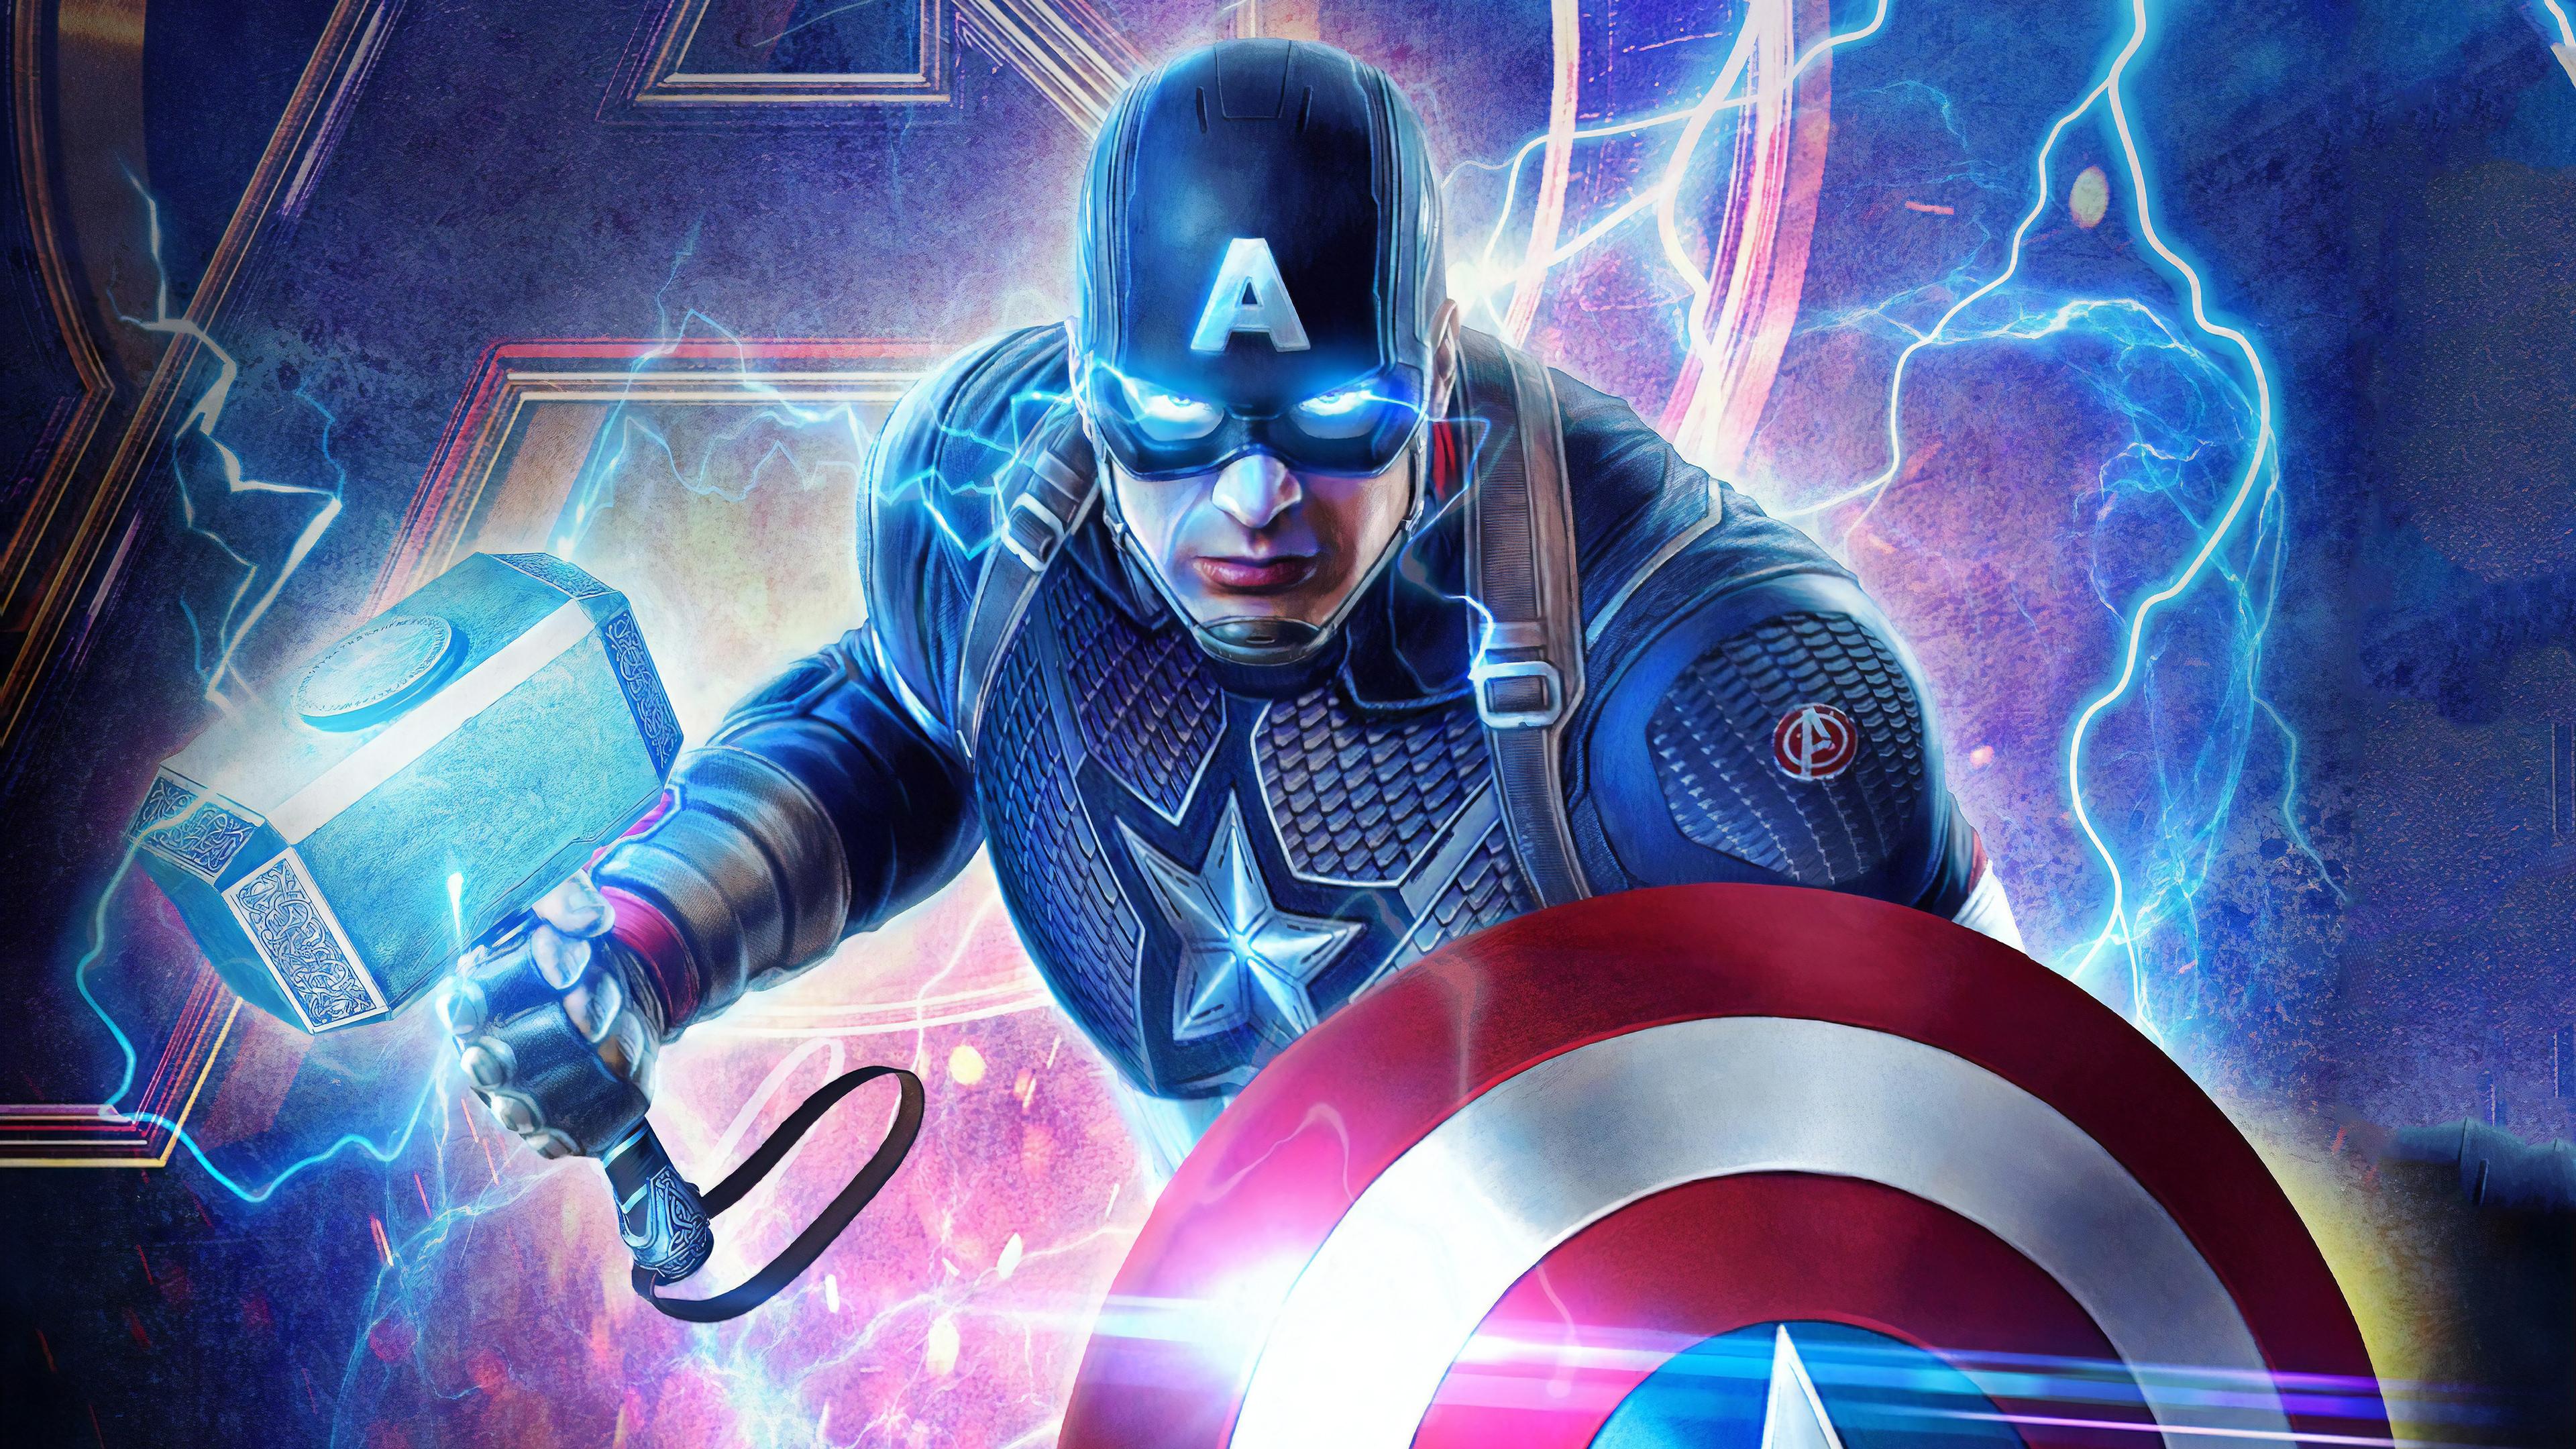 Captain America Avengers Endgame Wallpapers - Wallpaper Cave